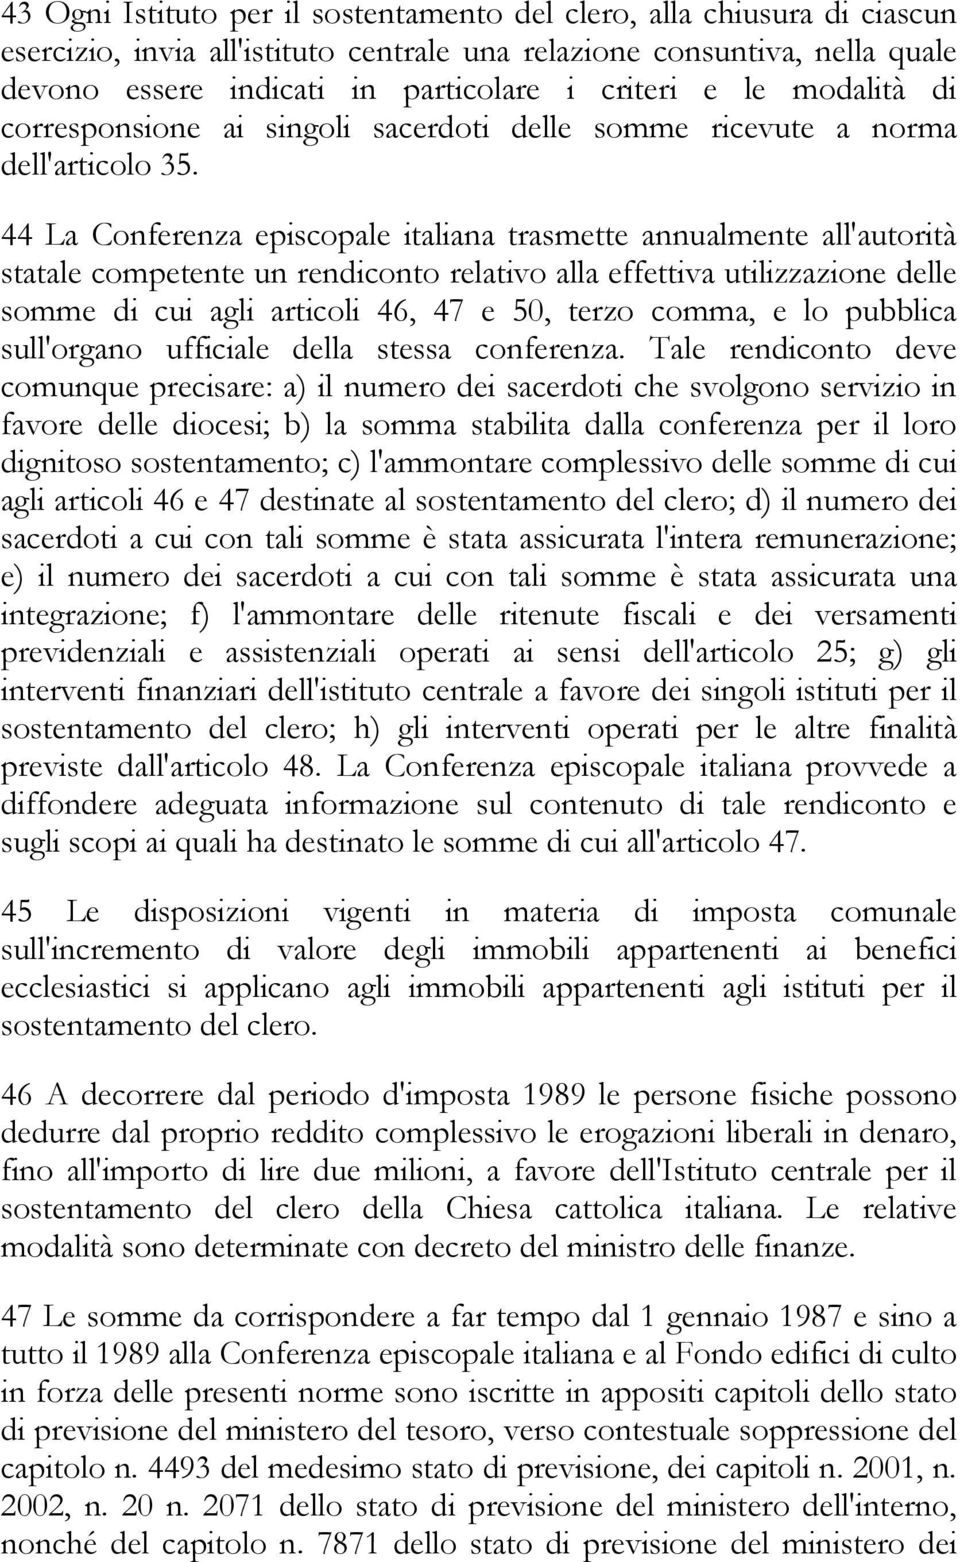 44 La Conferenza episcopale italiana trasmette annualmente all'autorità statale competente un rendiconto relativo alla effettiva utilizzazione delle somme di cui agli articoli 46, 47 e 50, terzo